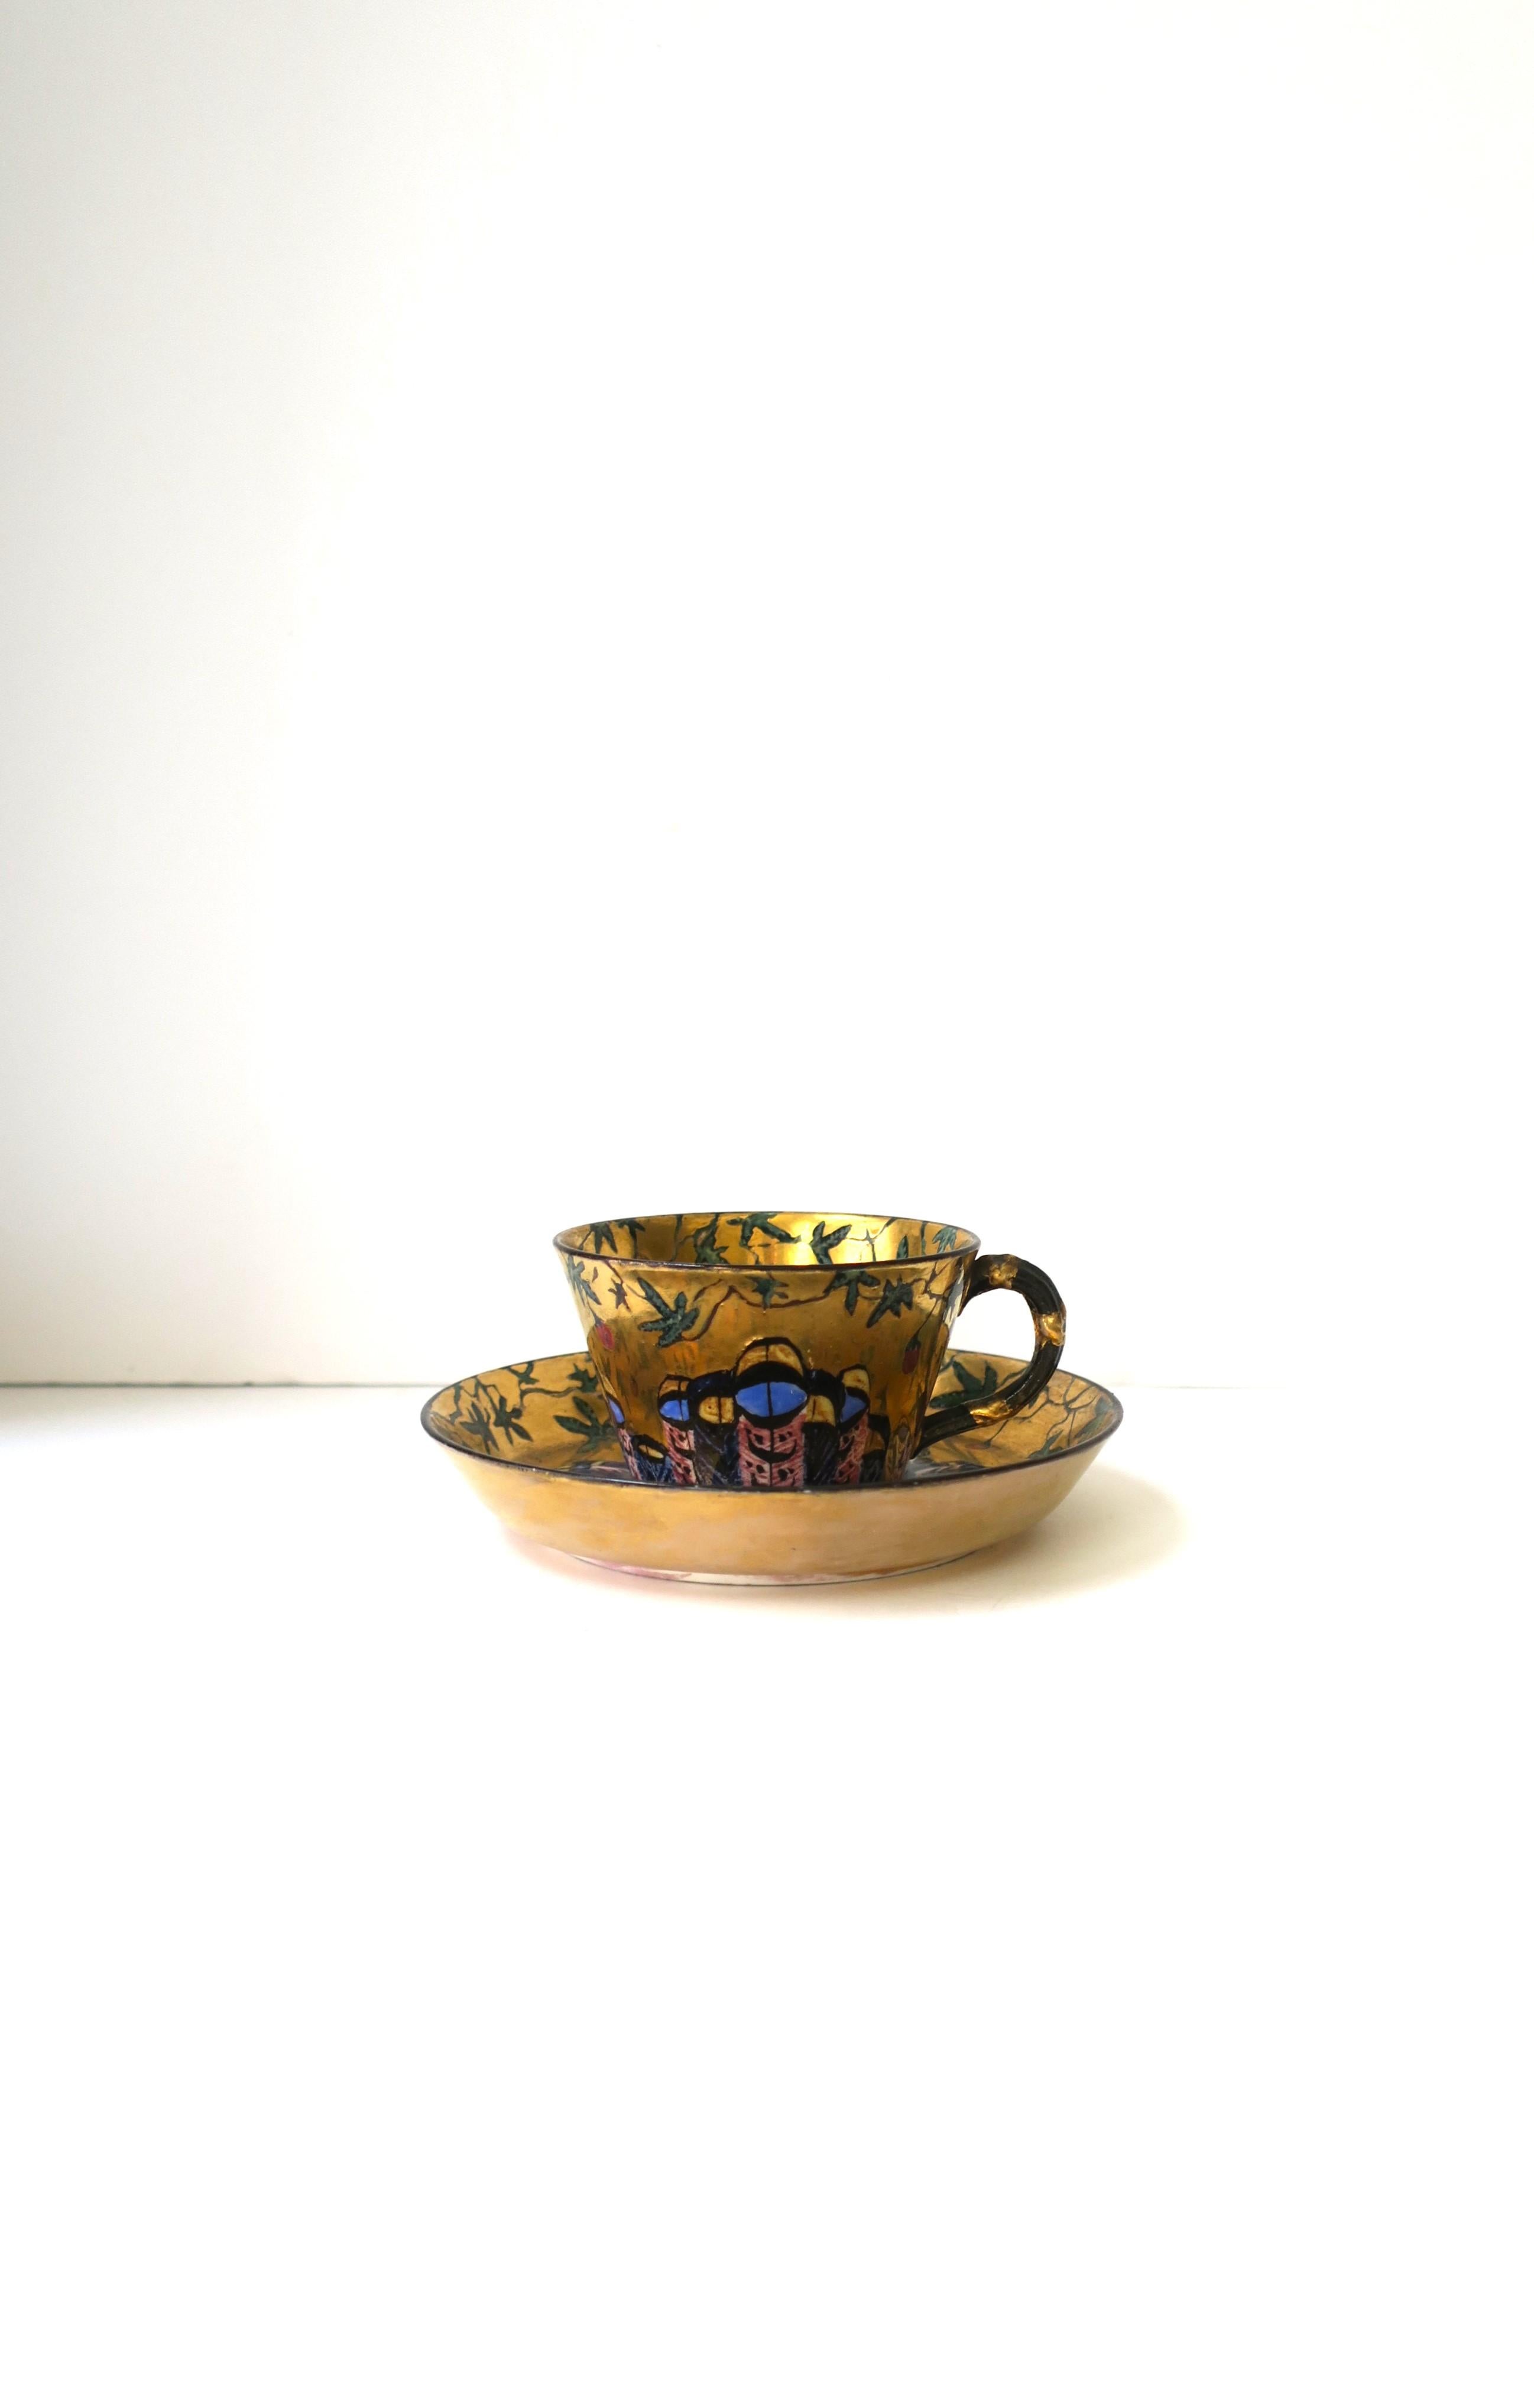 Eine sehr schöne und besondere Kaffee- oder Teetasse mit Untertasse aus Porzellan, ca. Anfang bis Mitte des 20. Jahrhunderts. Vielleicht französischer oder italienischer Herkunft. Unbekannter Designer. Sowohl Tasse als auch Untertasse sind rundum